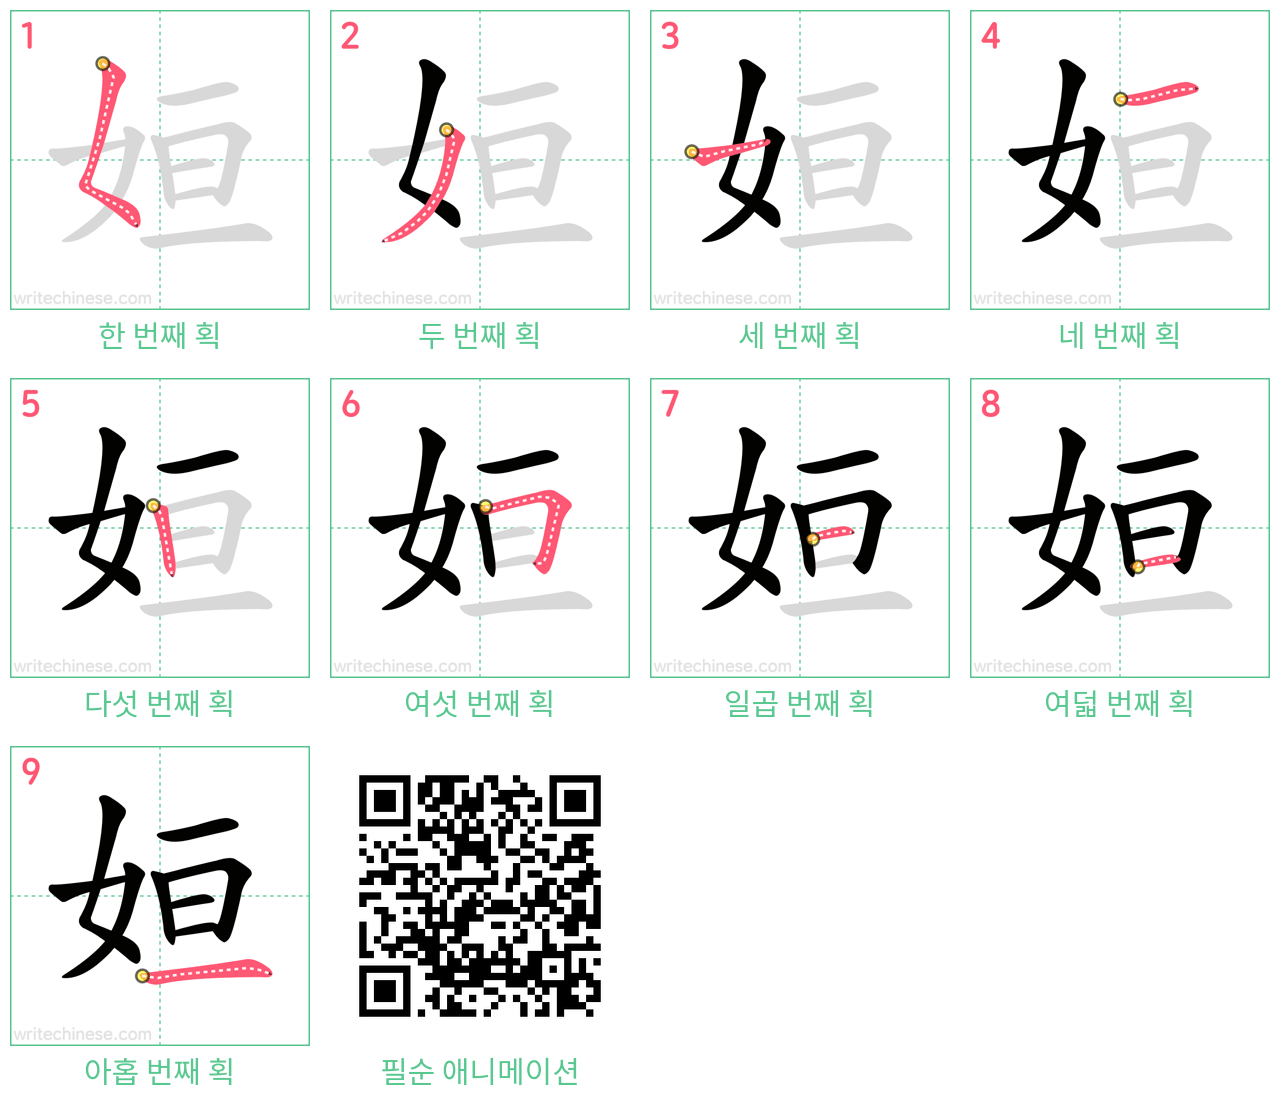 姮 step-by-step stroke order diagrams